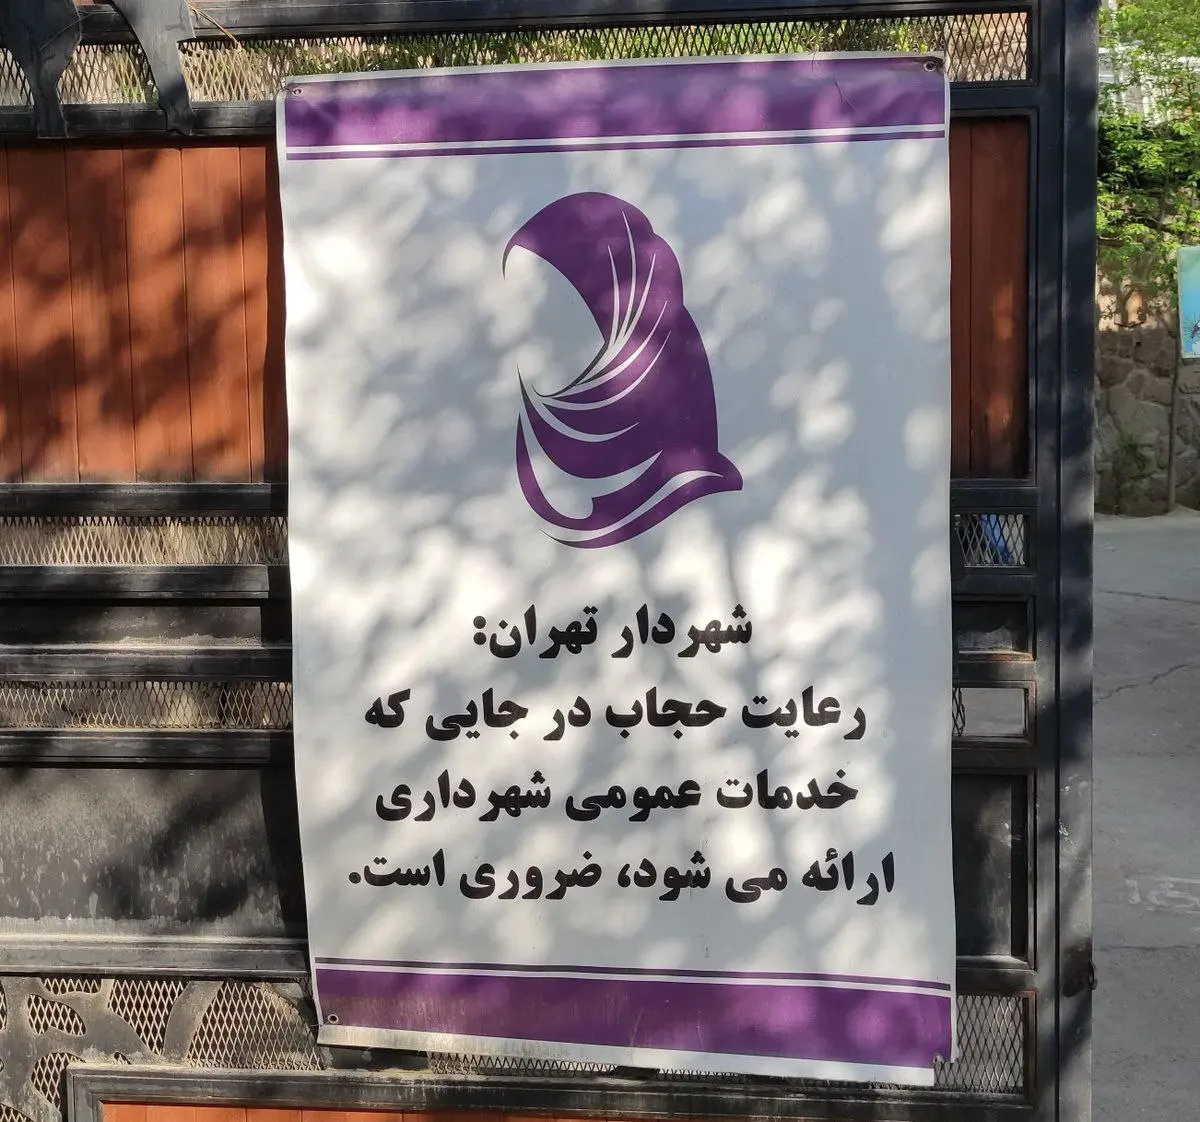 روش قابل تامل شهرداری برای دعوت زنان به رعایت حجاب